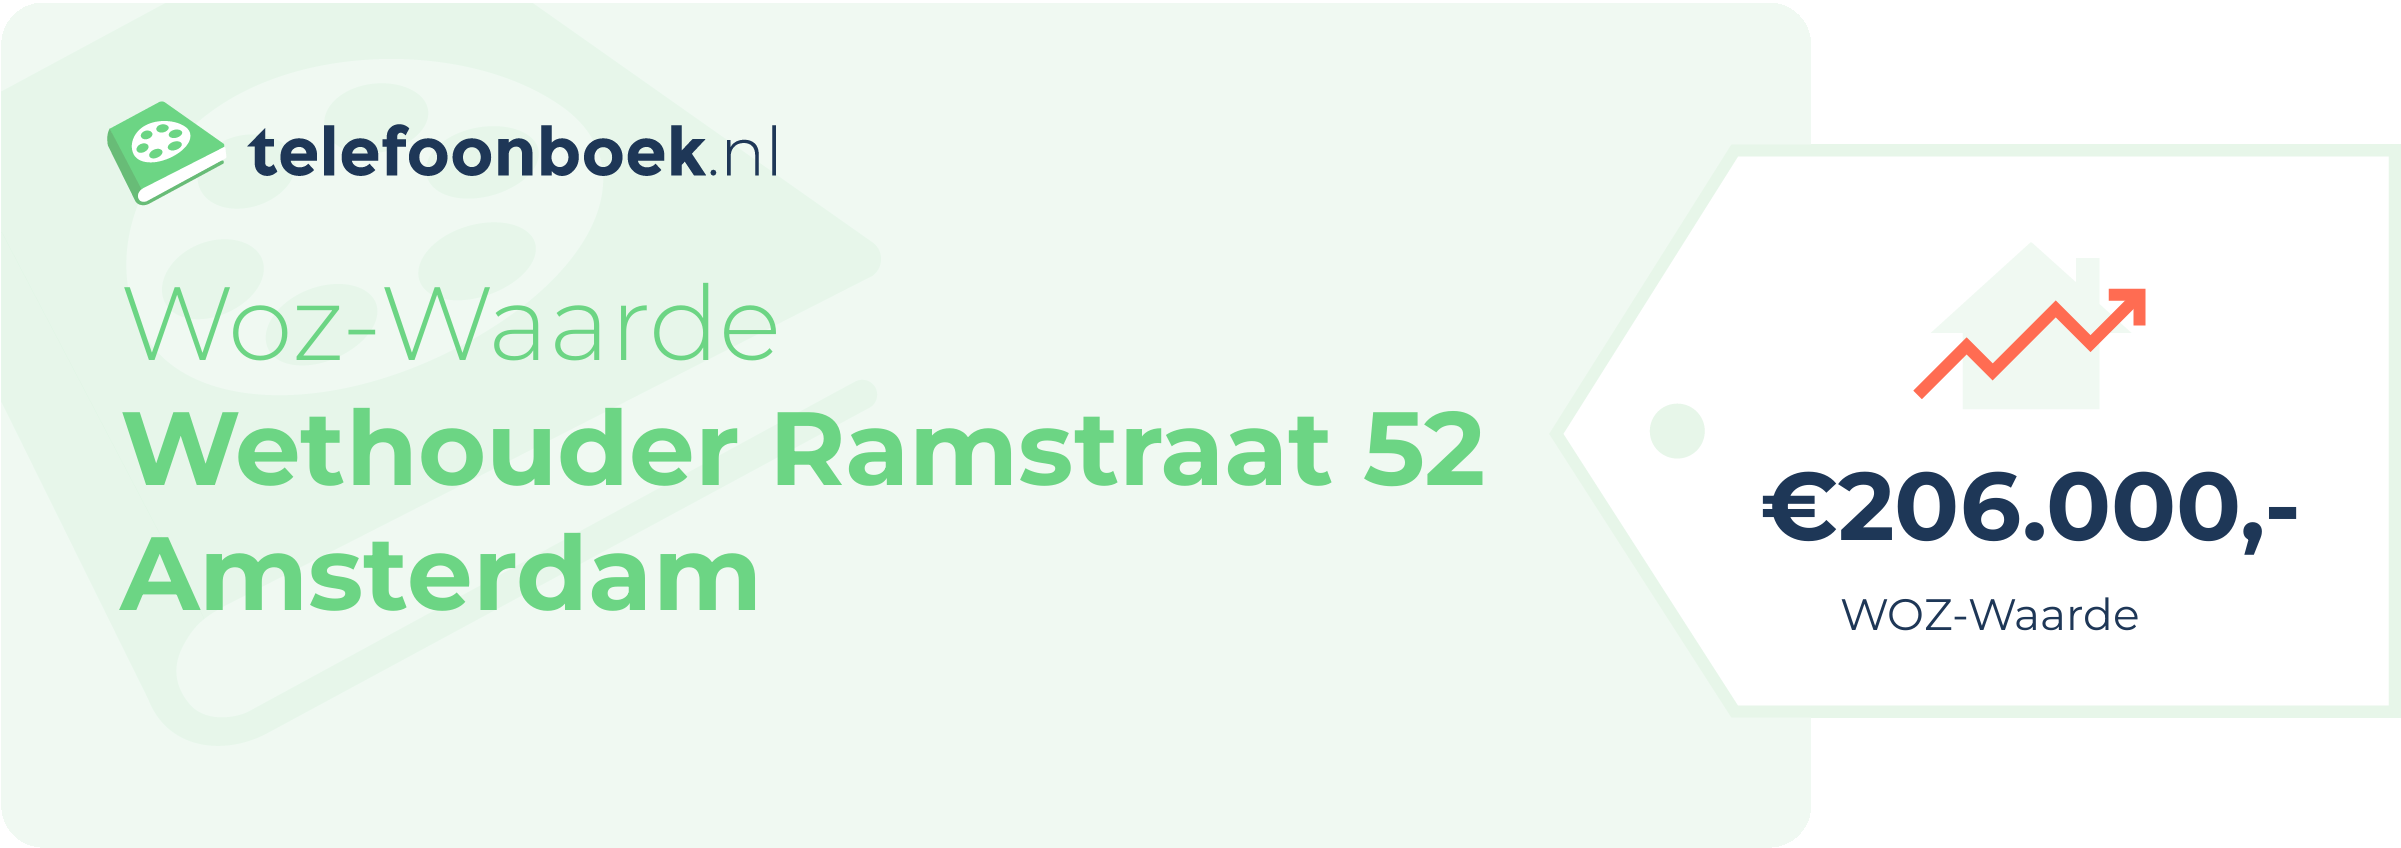 WOZ-waarde Wethouder Ramstraat 52 Amsterdam